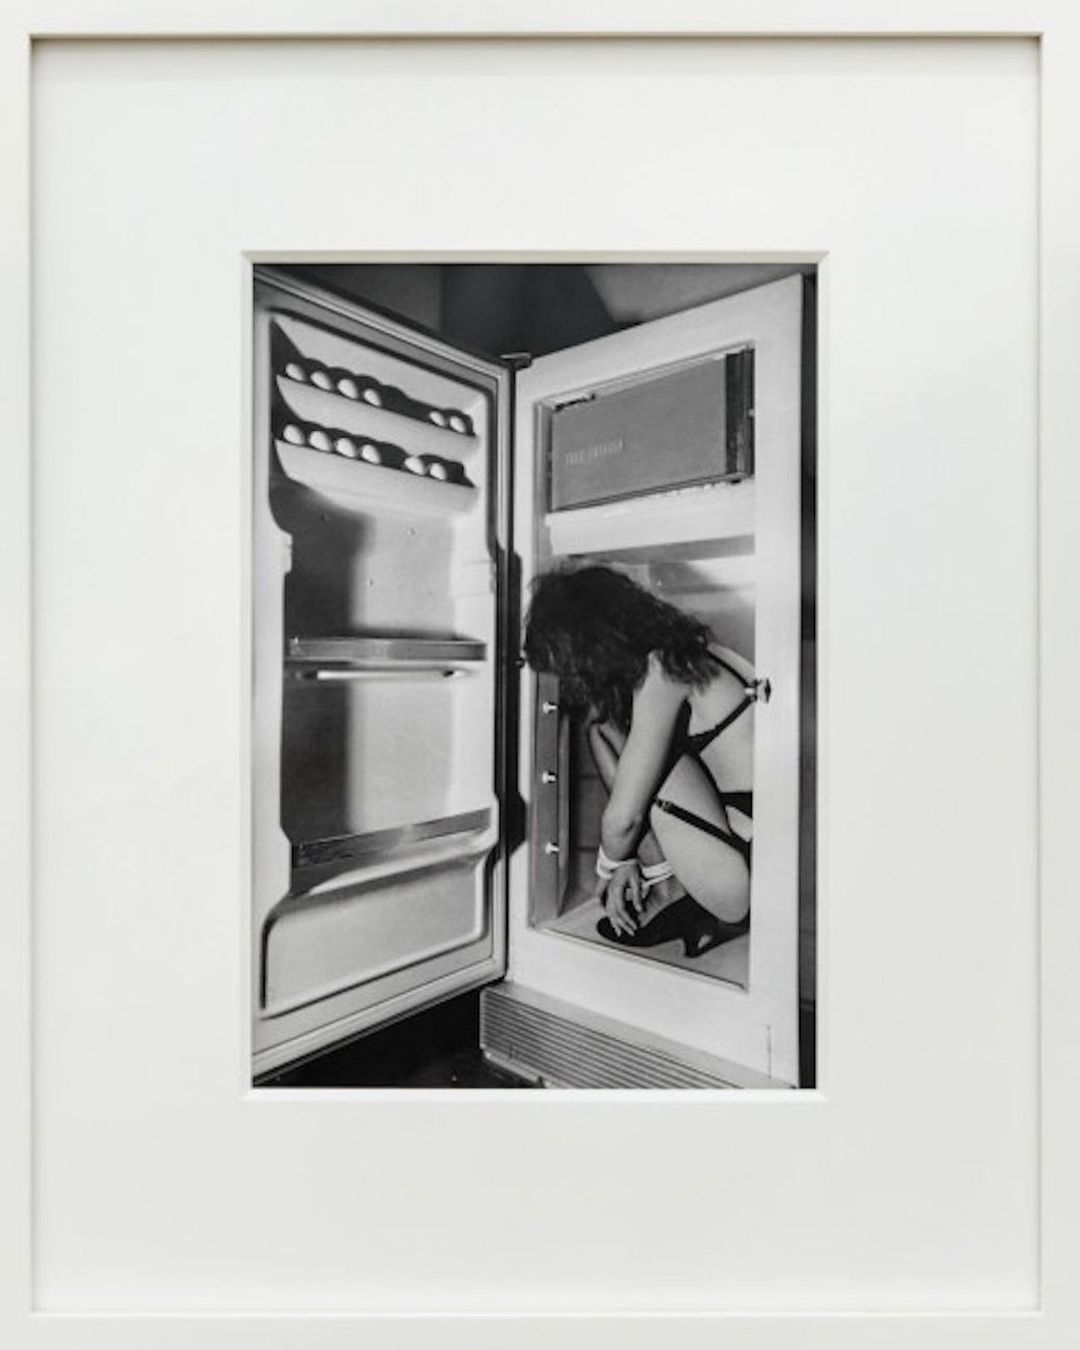 "Refrigerator" by Jimmy DeSana